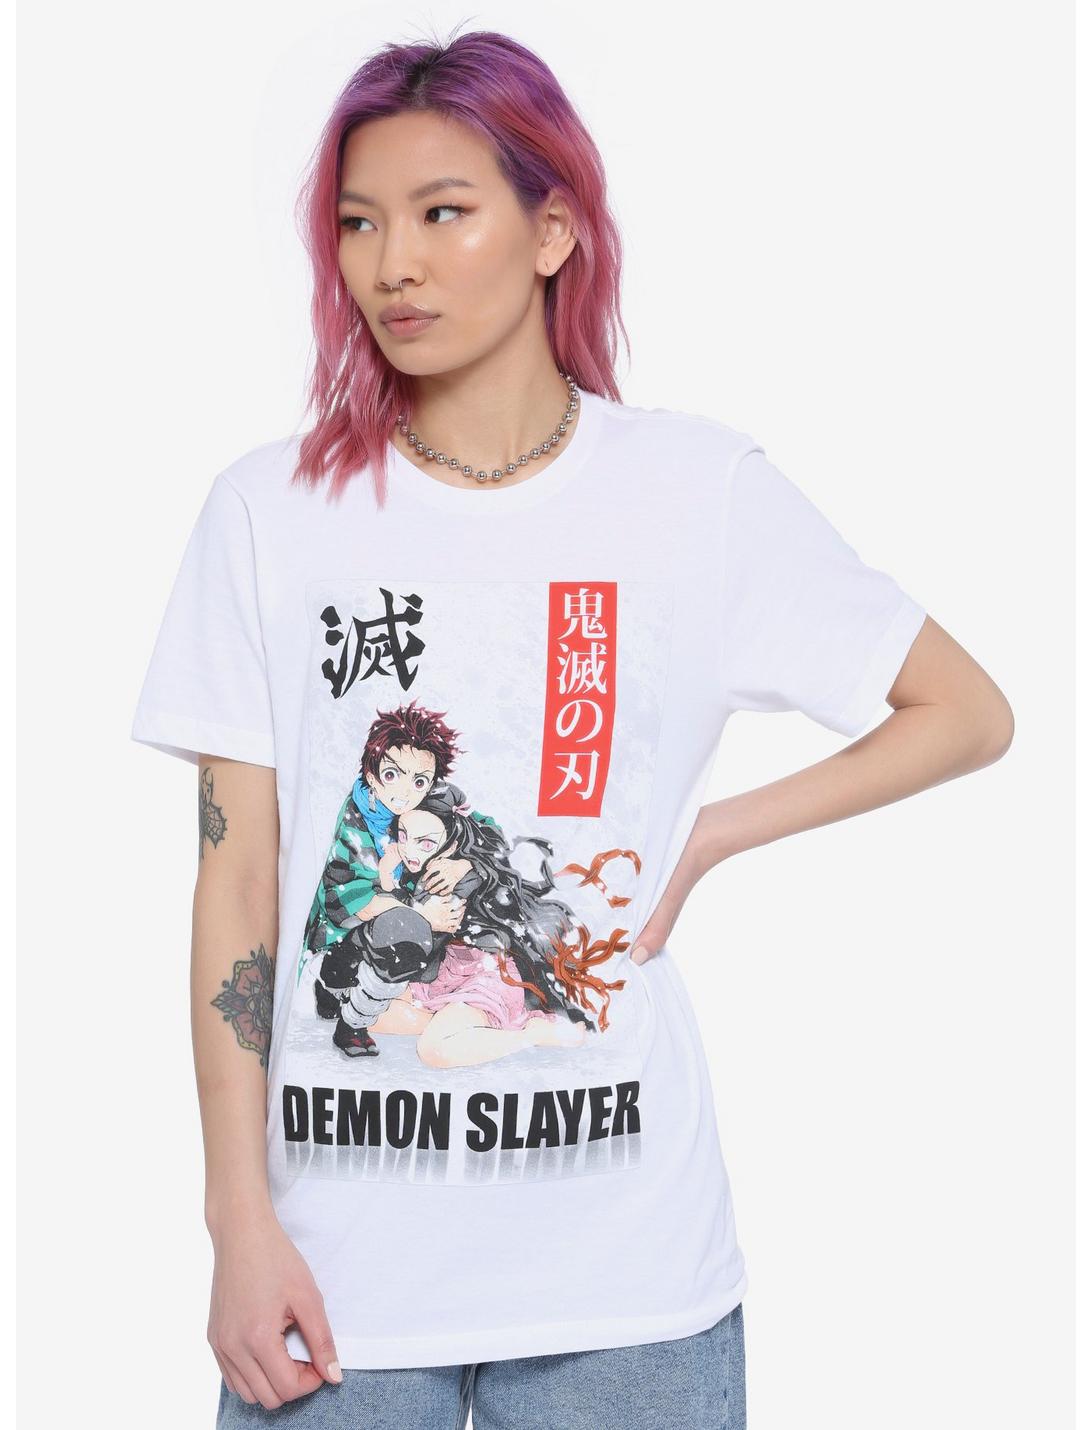 Tanjiro and Nezuko Retro Art Demon Slayer T-Shirt Zip Pouch by Anime Art -  Fine Art America